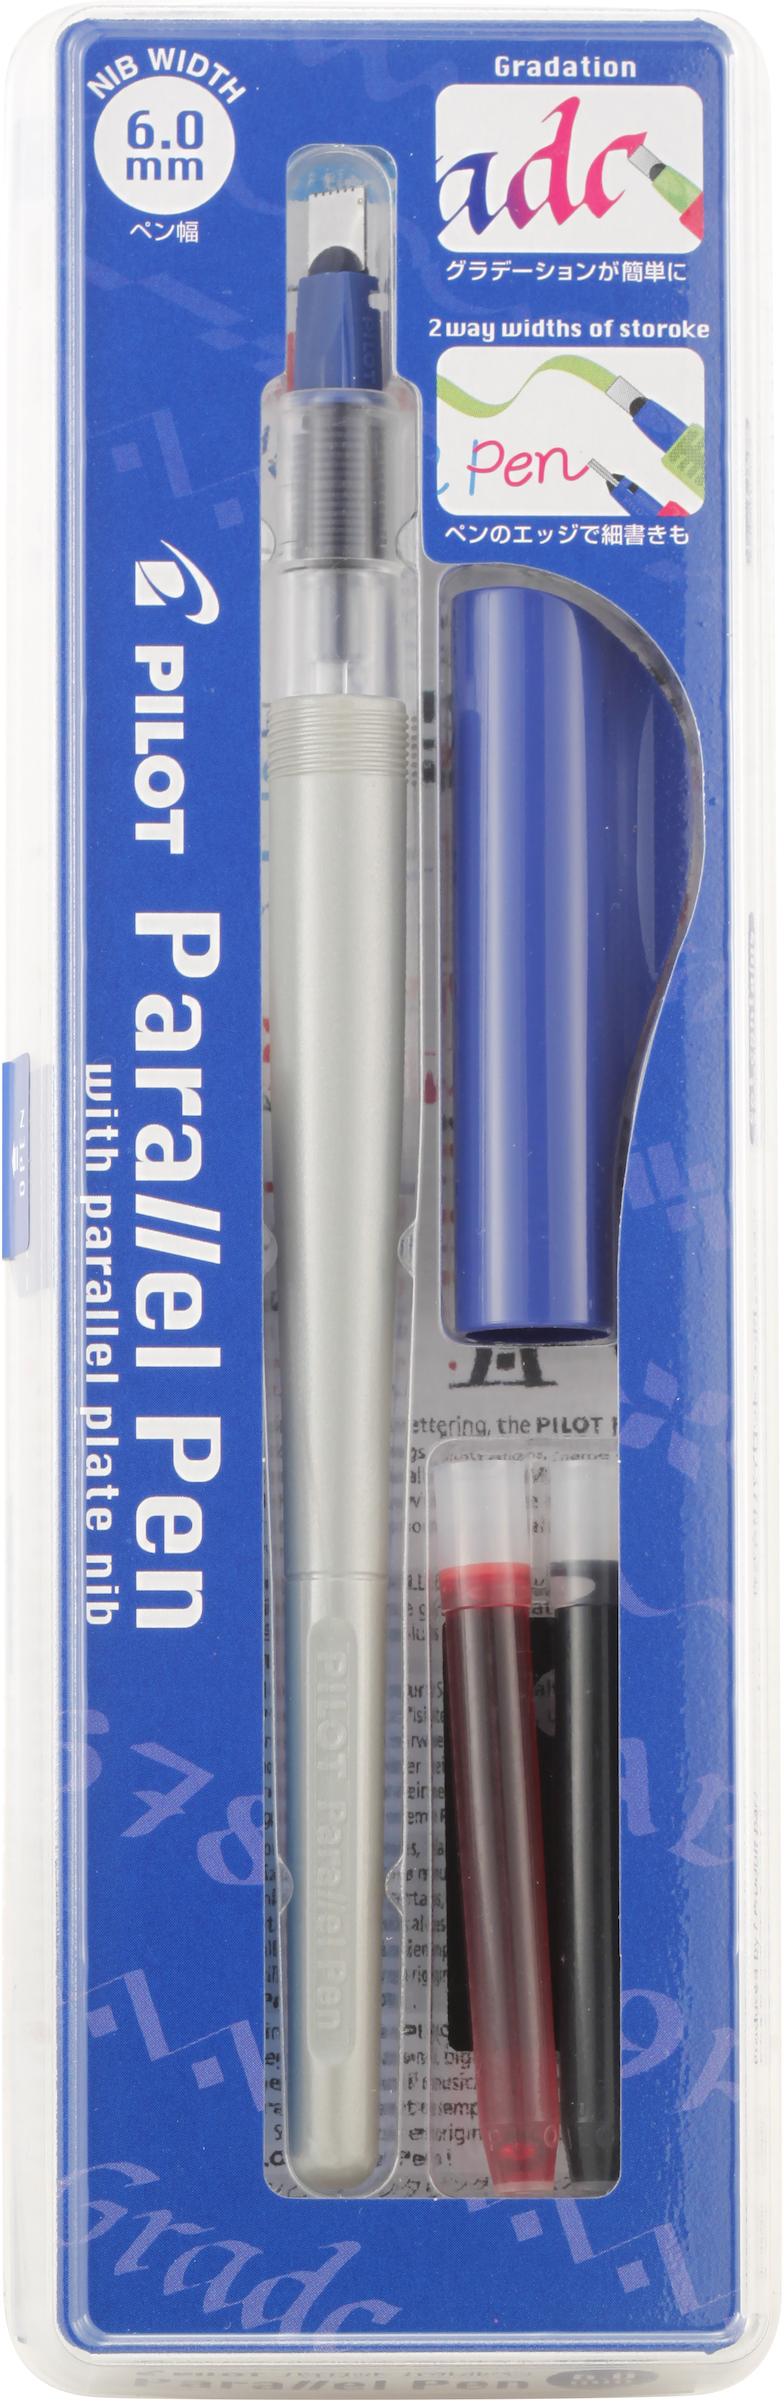 Pilot - Parallel - Pen